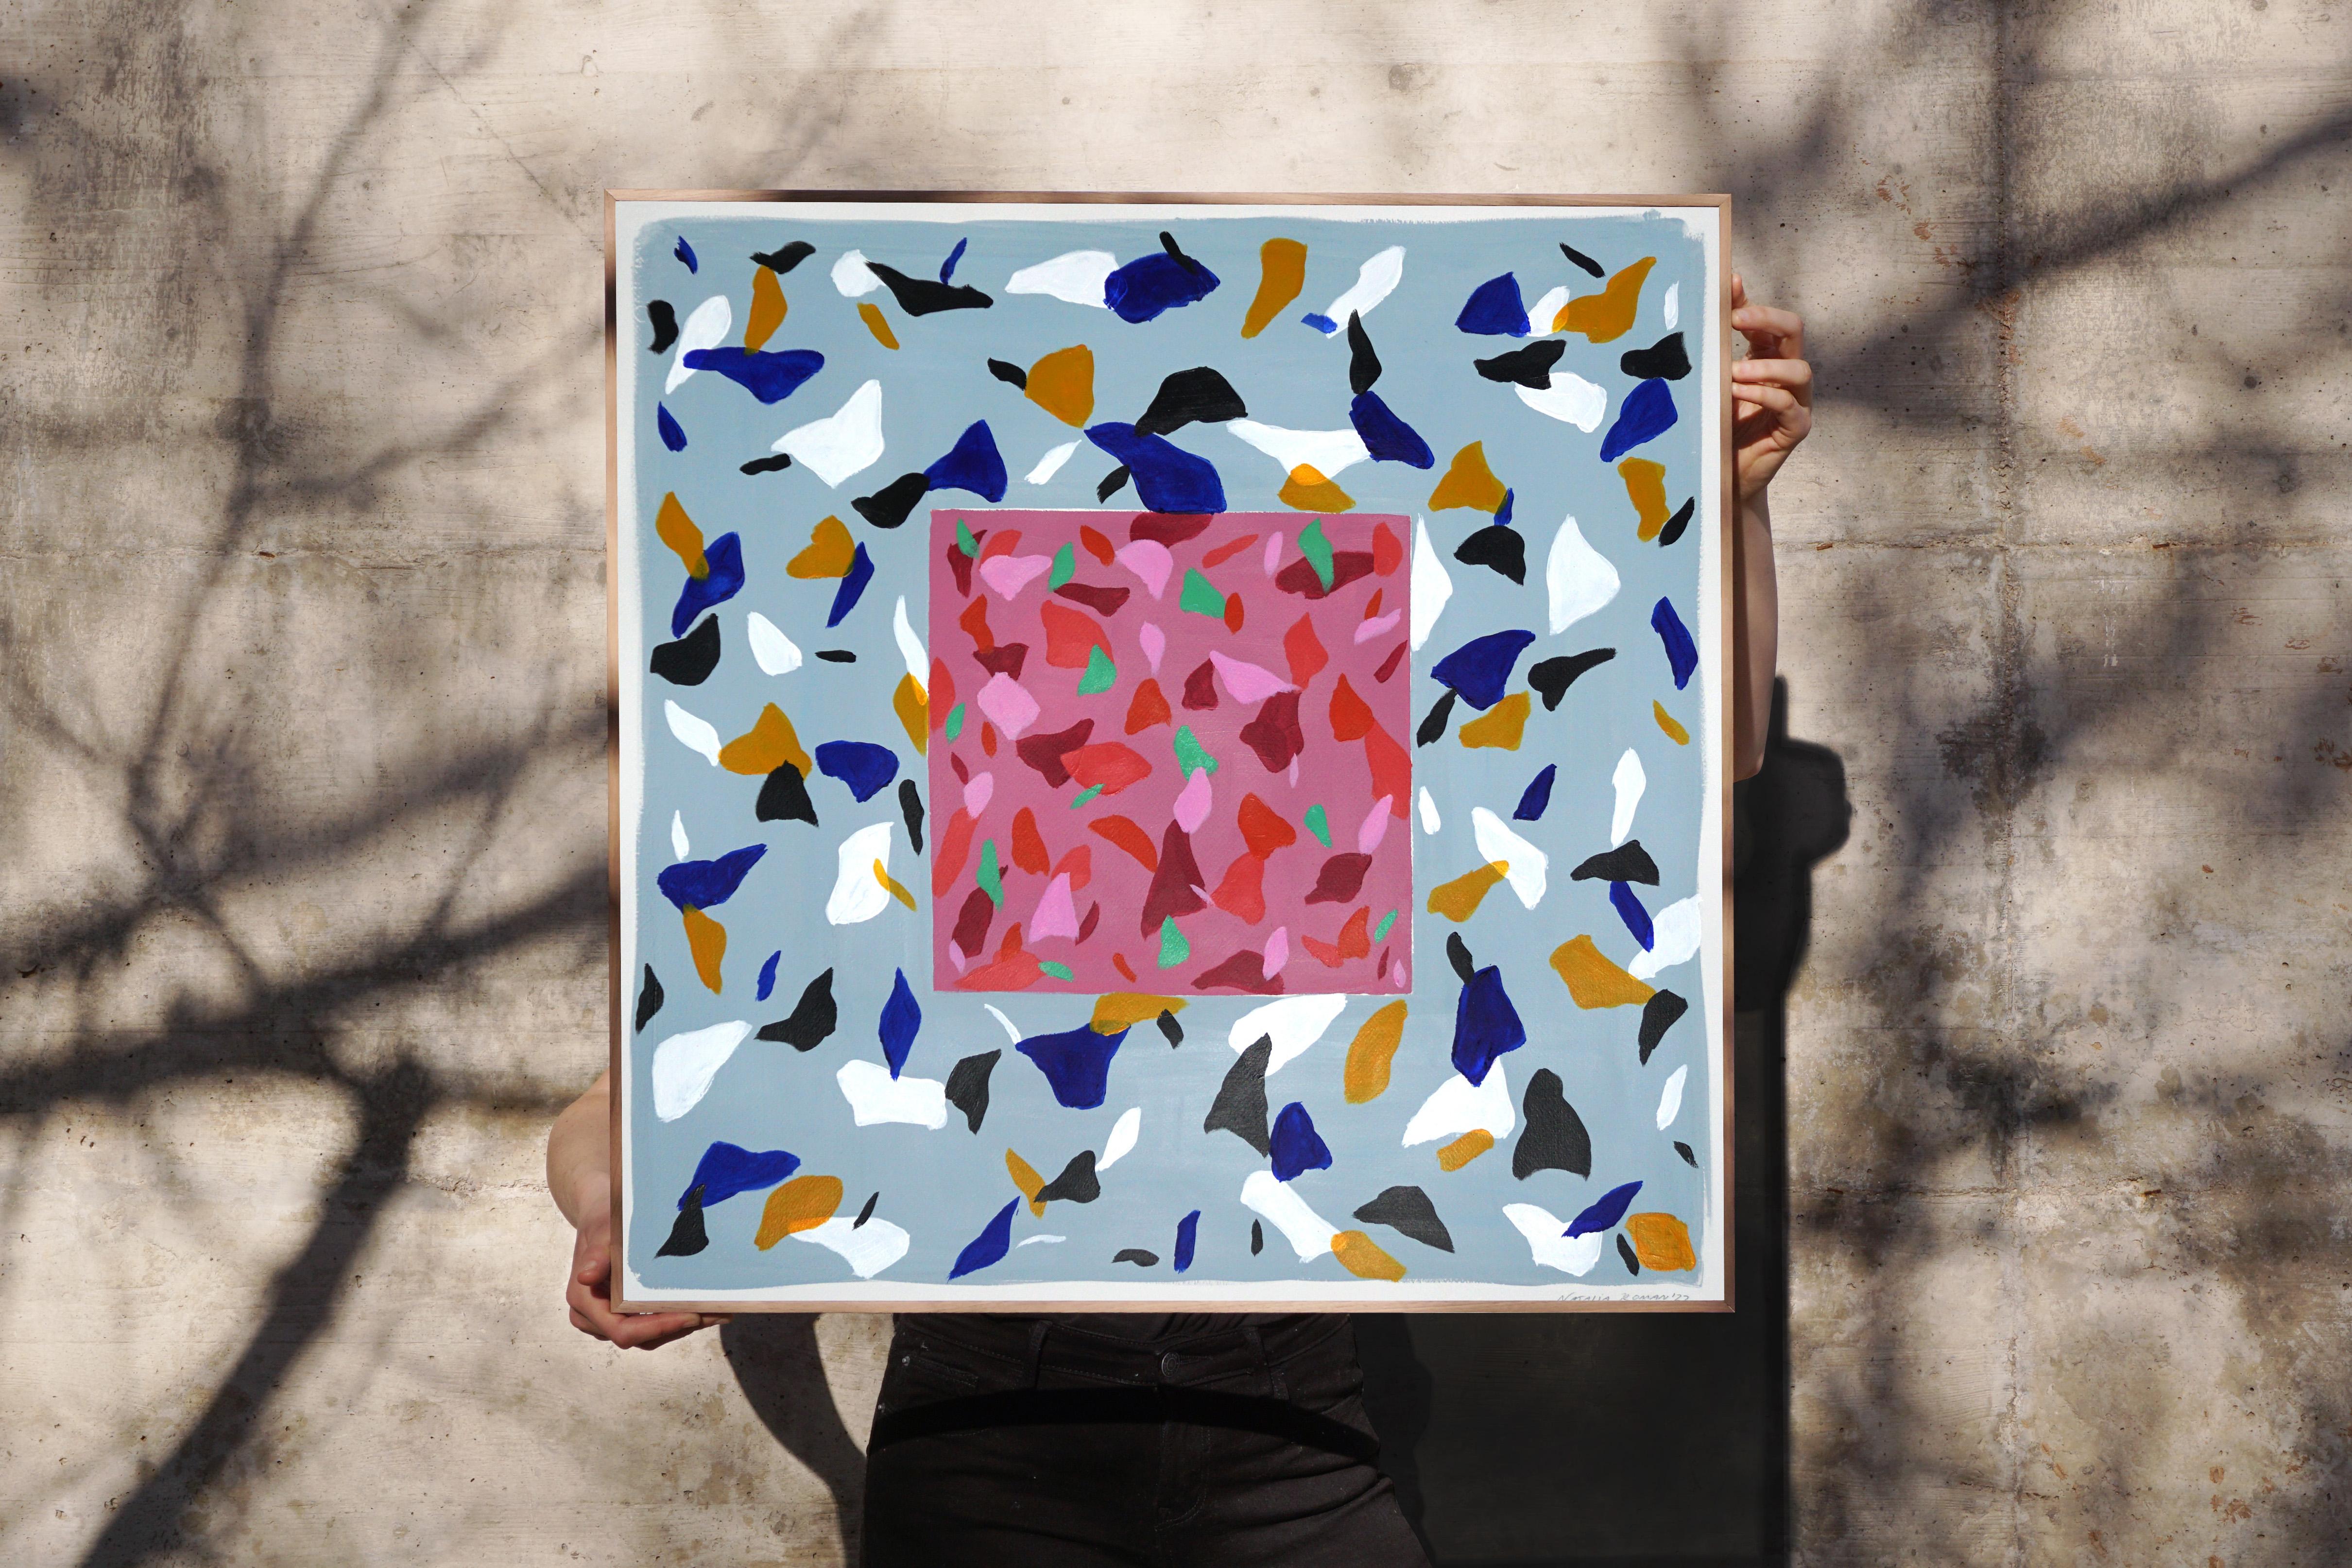 Mauvefarbene Camouflage auf Schiefer, quadratische Terrazzo-Fliesen in Rosa und Orange (Geometrische Abstraktion), Painting, von Natalia Roman